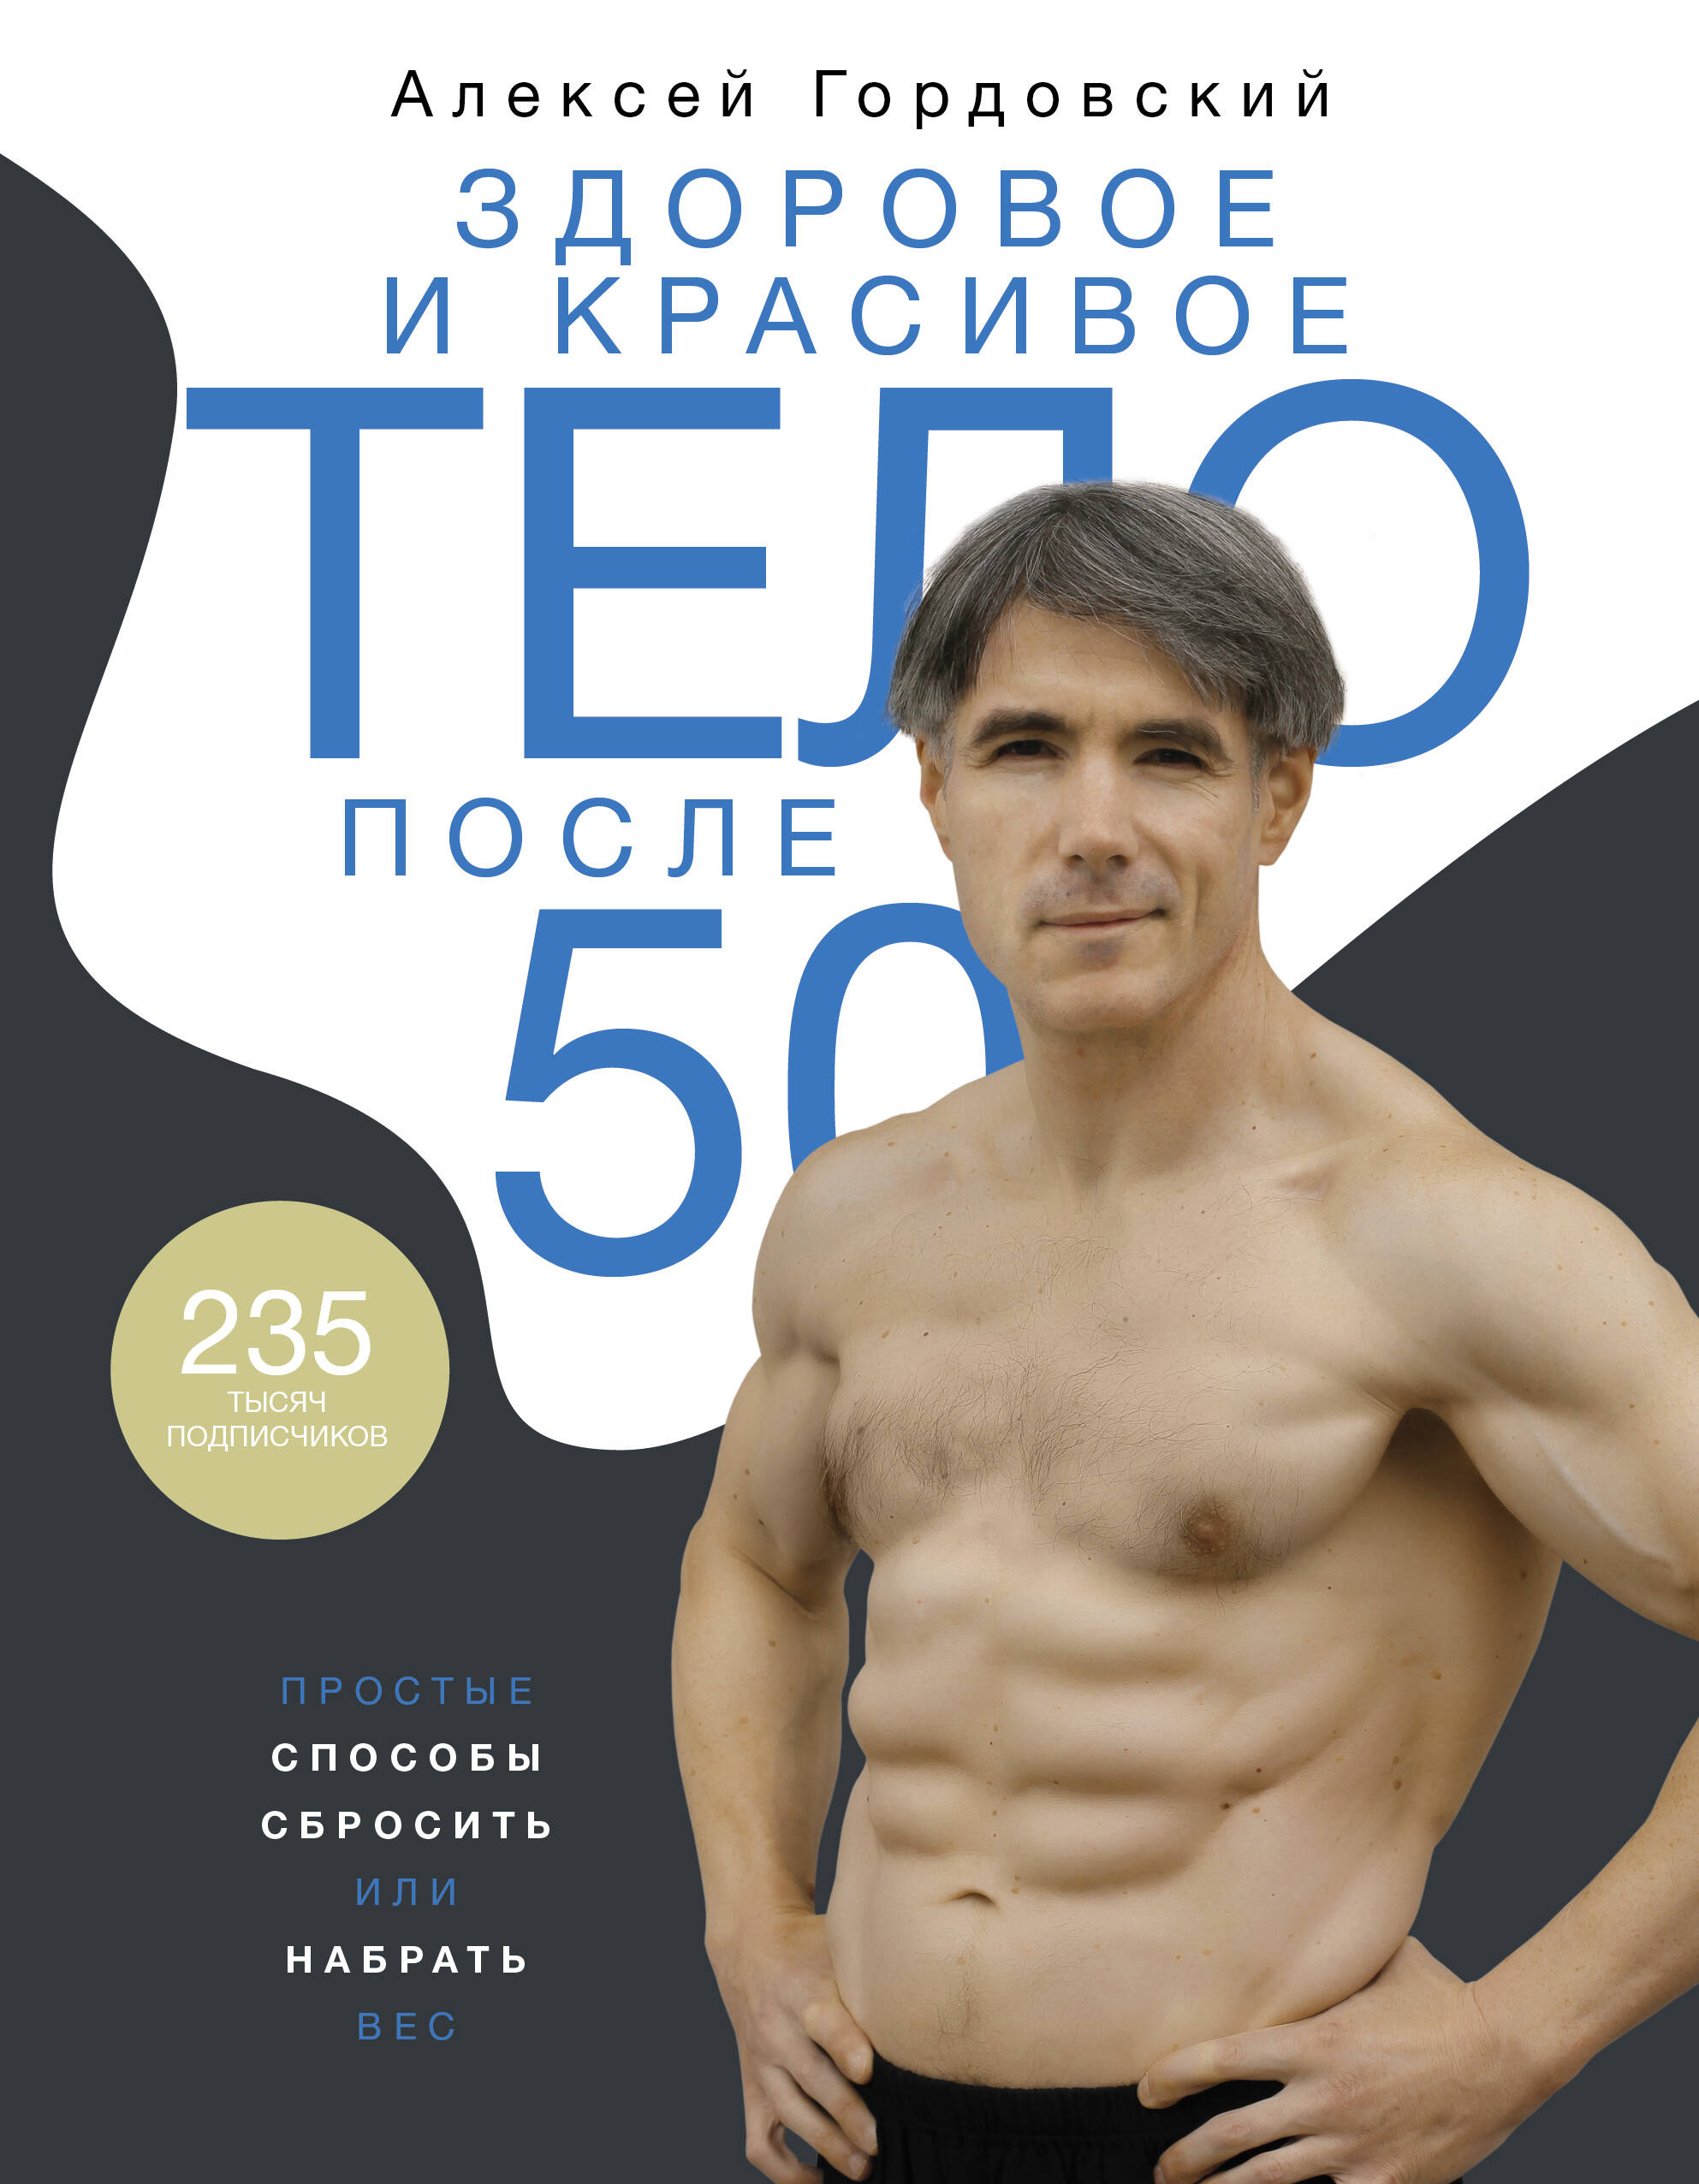 Здоровое и красивое тело после 50: простые способы сбросить или набрать вес здоровое и красивое тело